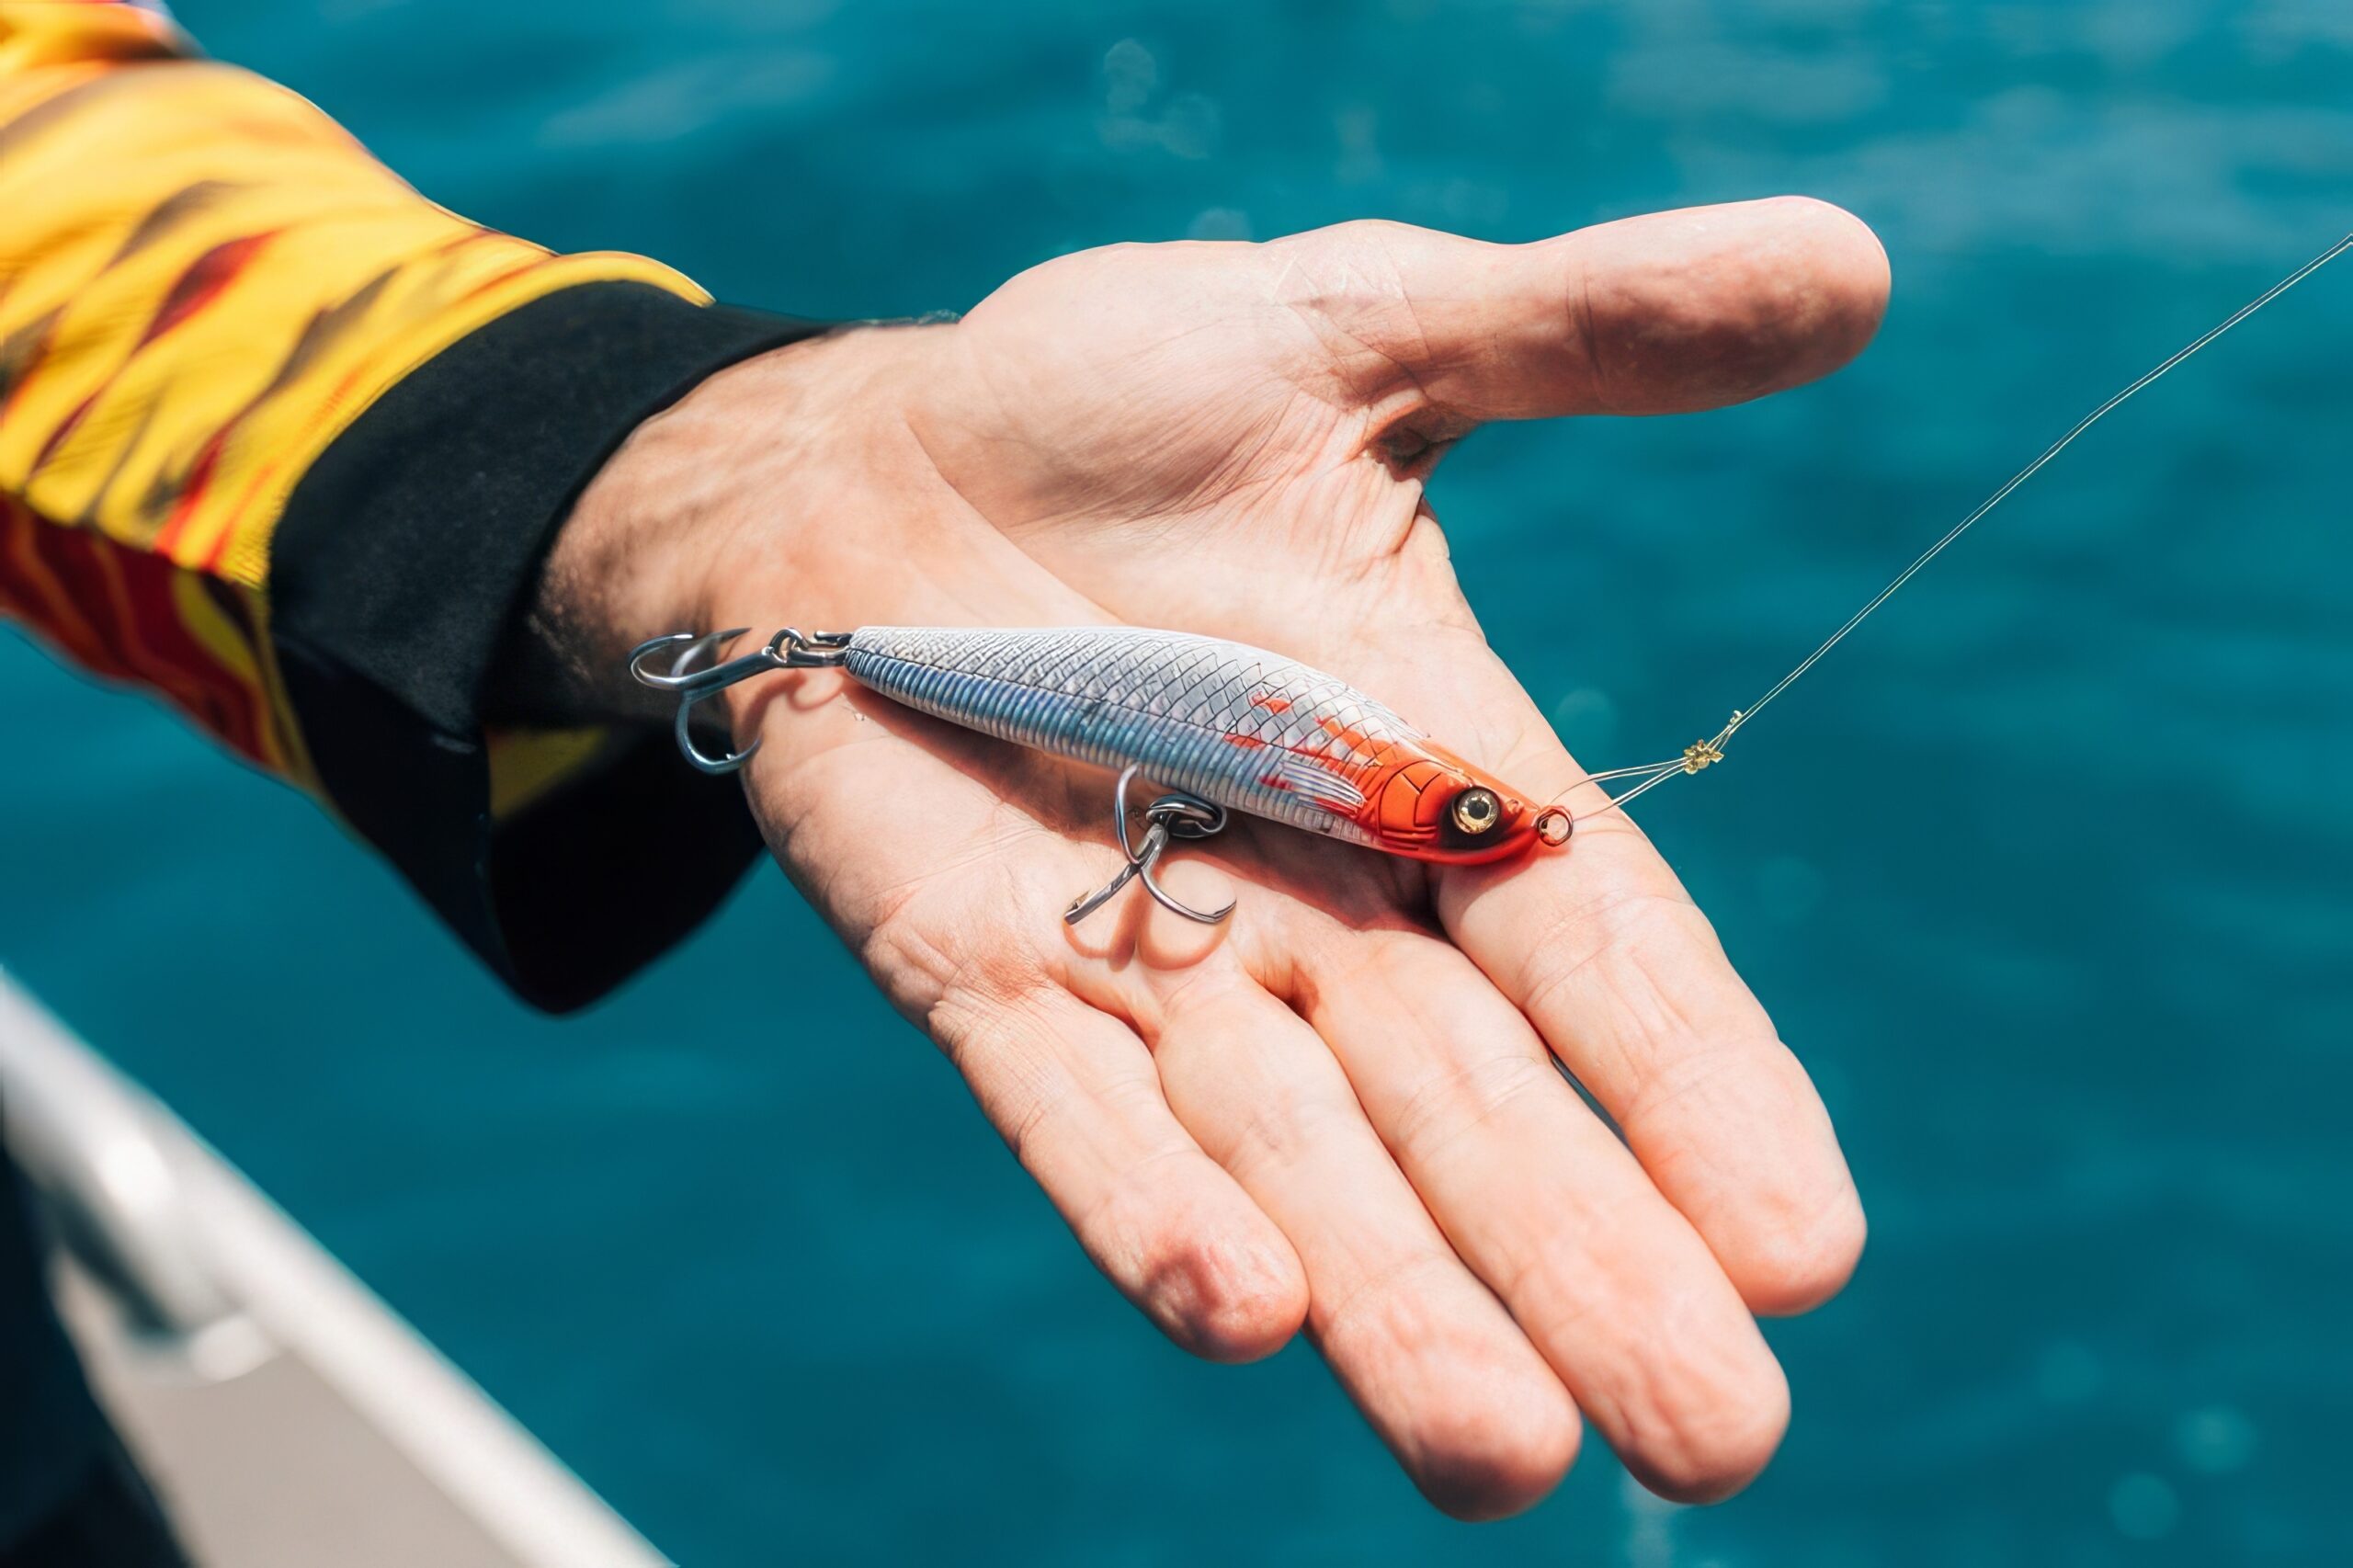 Testing RMF Pillager sinking stick bait lures - Ryan Moody Fishing